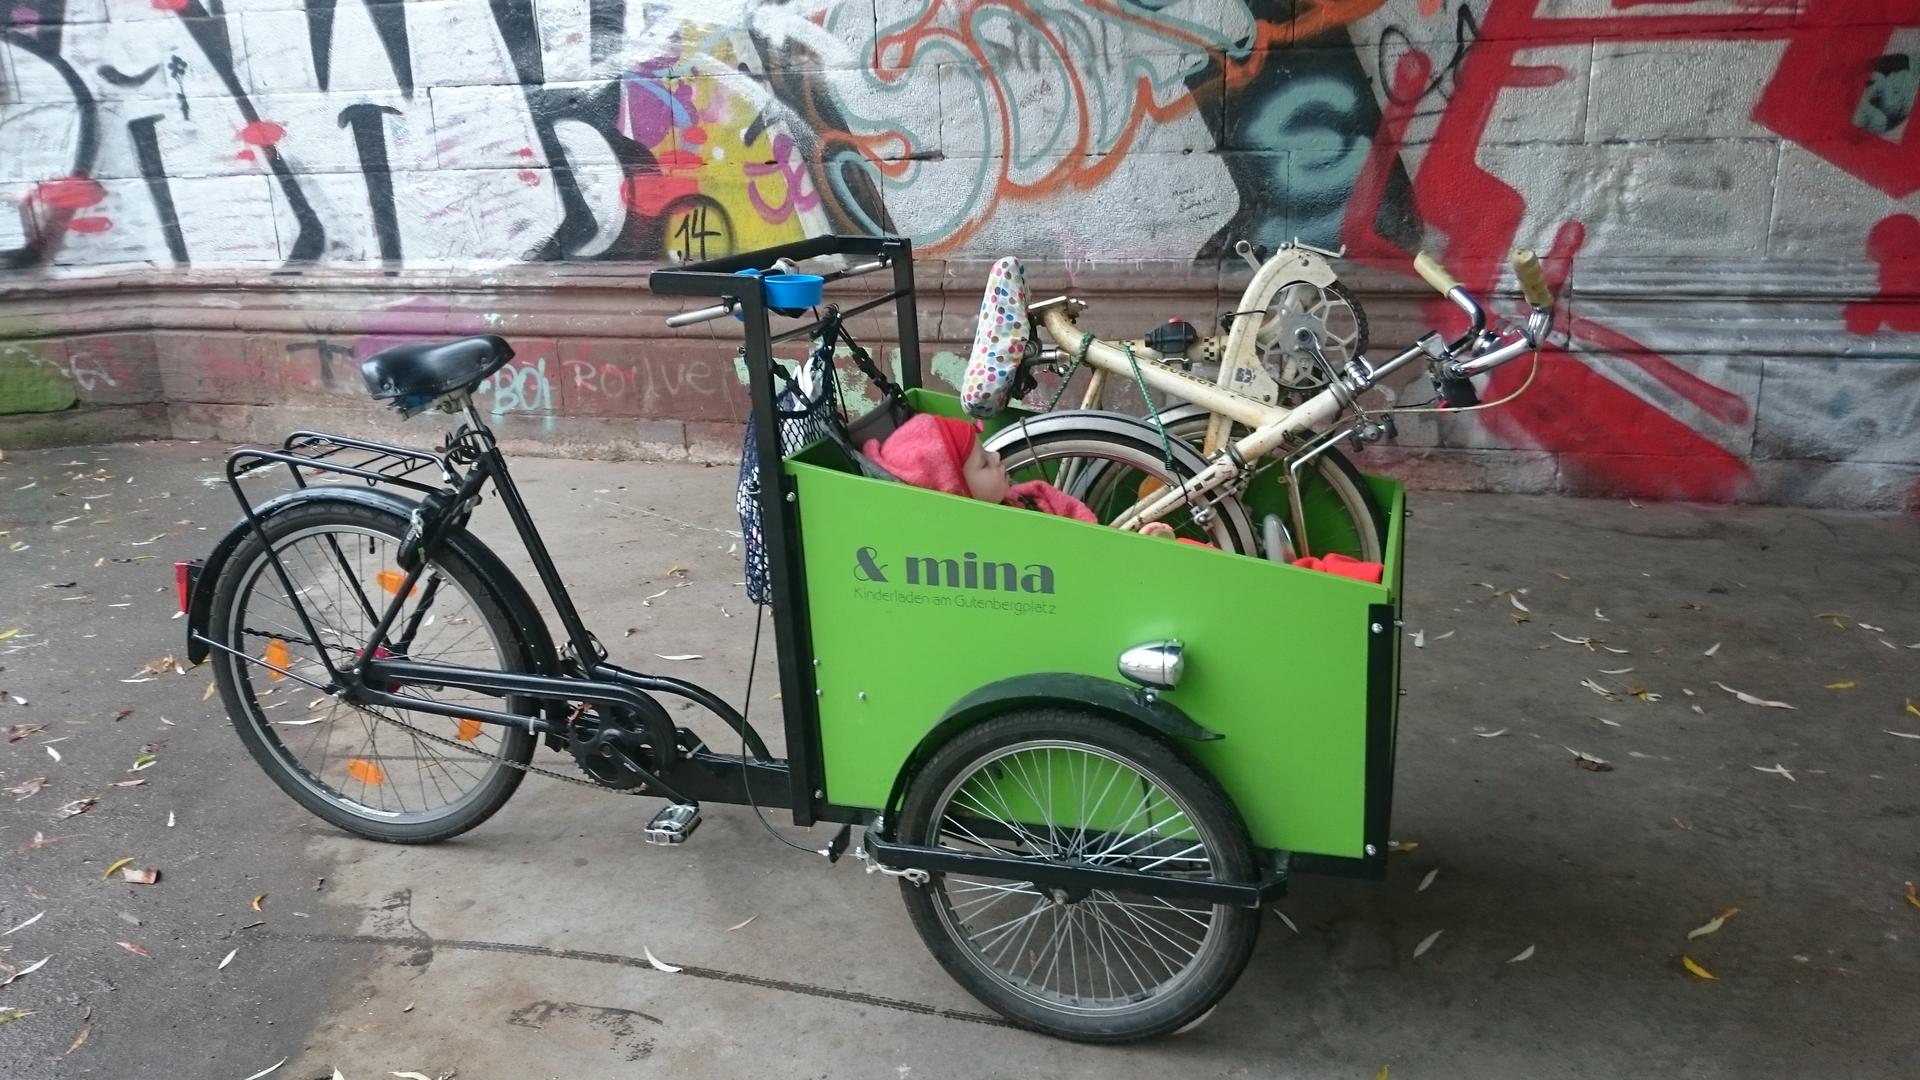 In der froschgrünen Transportbox eines Lastenrads sitzt ein zufriedenes kleines Kind neben einem zusammengeklappten Faltrad.